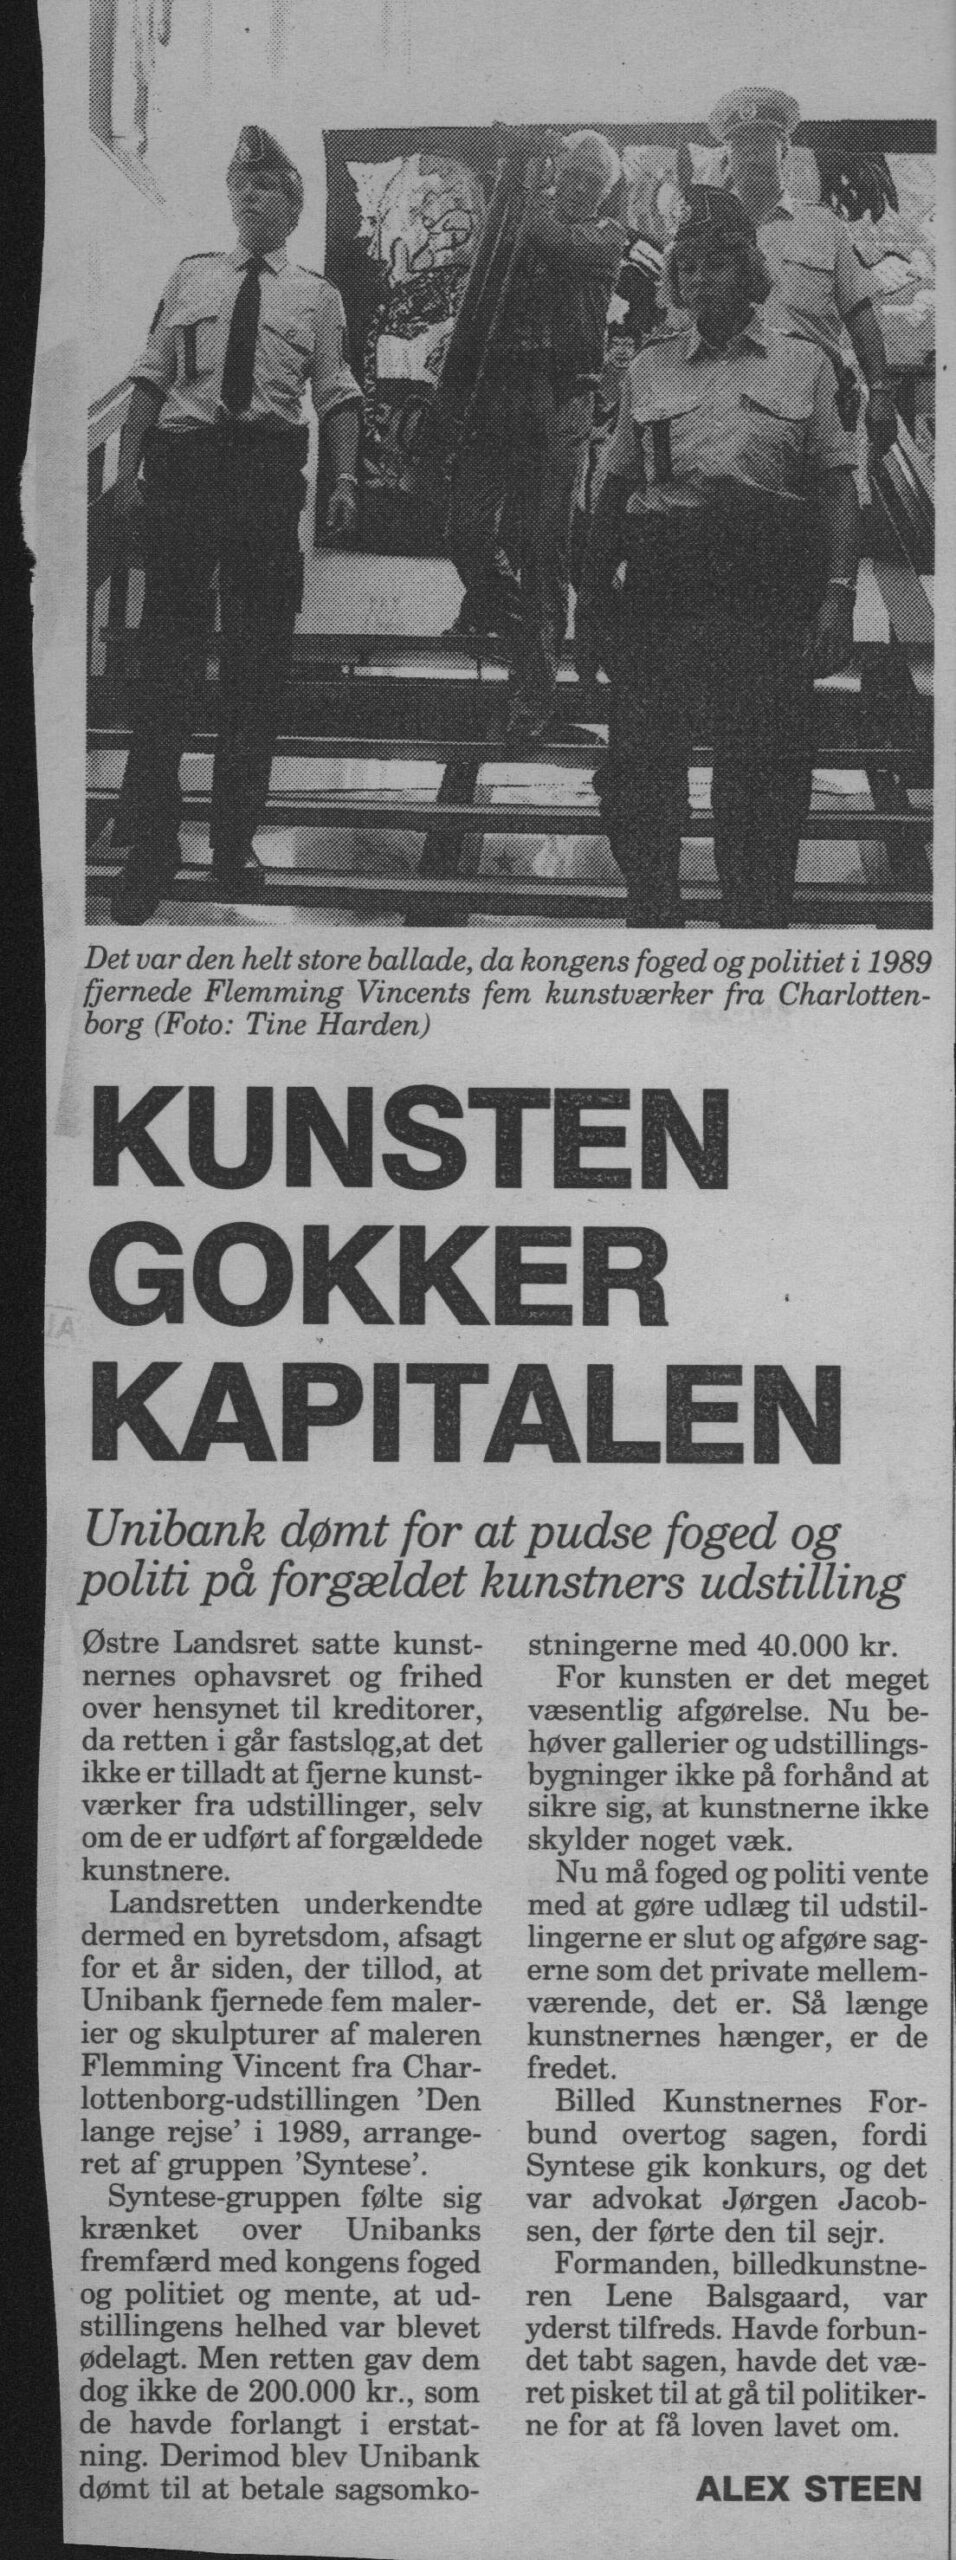 Kunsten gokker kapitalen. Omtale (Retssag. Den Lange rejse, Charlottenborg, København 1989). Alex Steen.